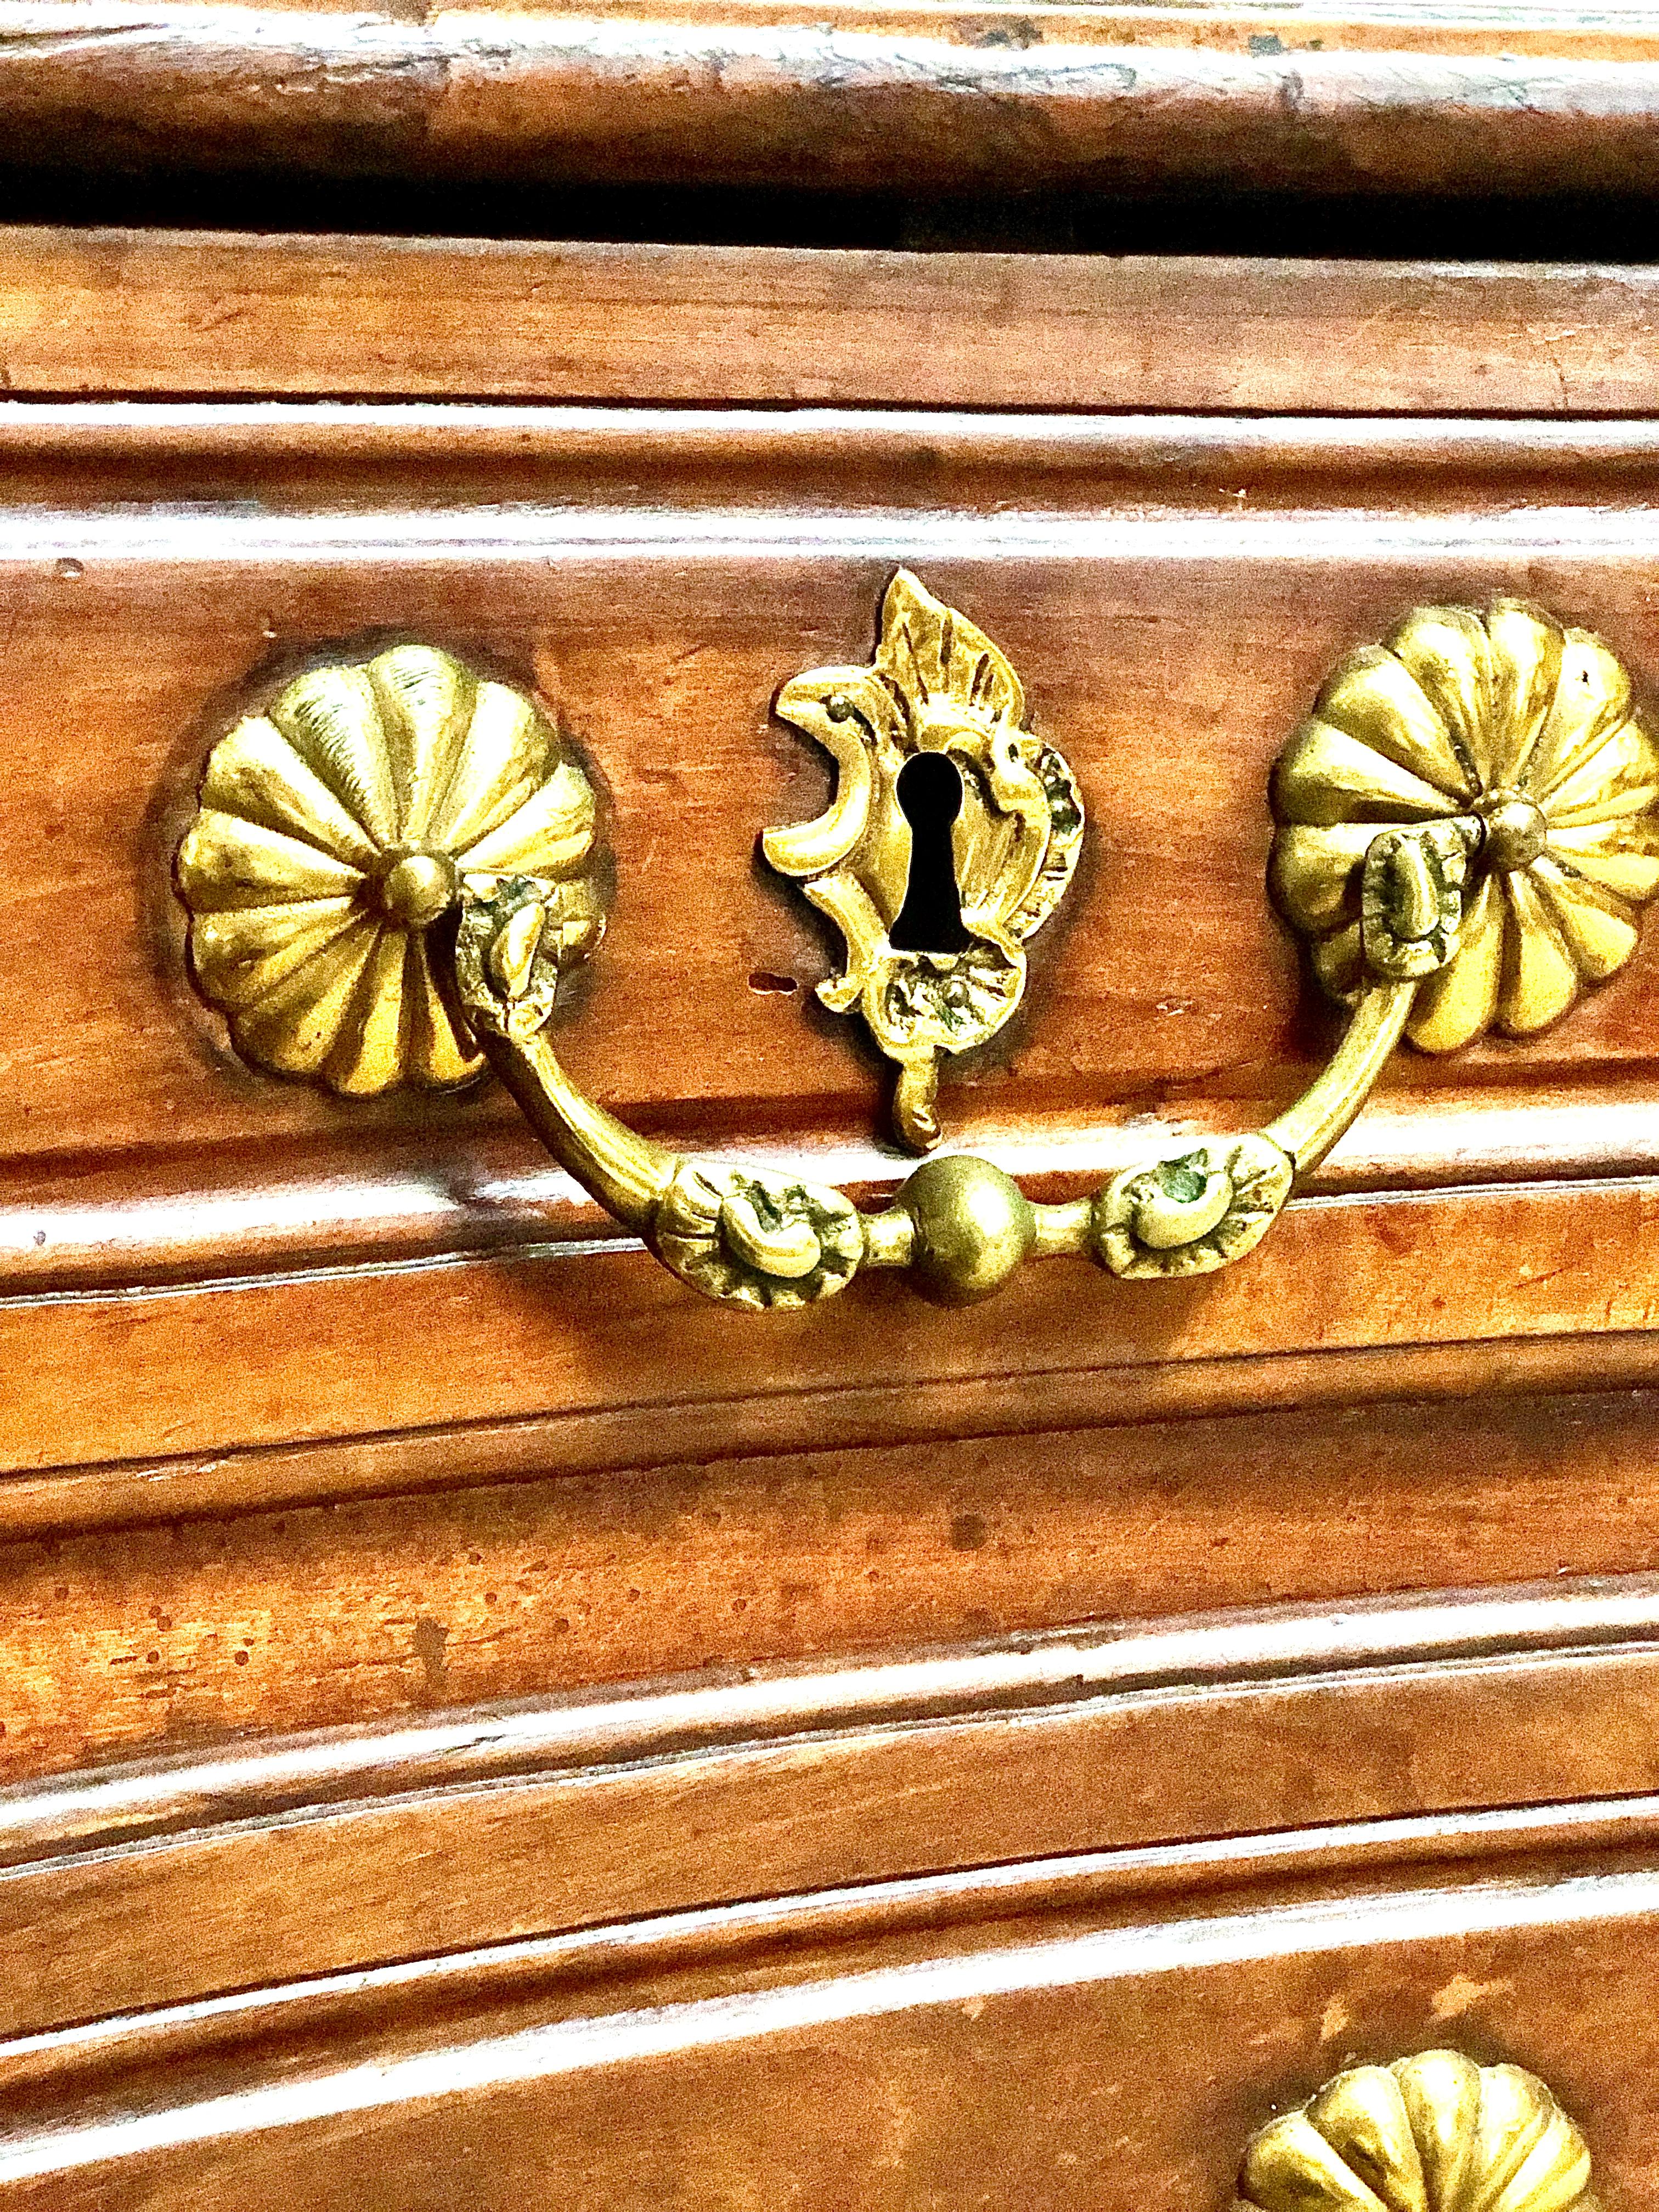 Eine prächtige französische Kommode aus der Louis XV-Epoche mit vier Schubladen, die auf elegant geschnitzten Füßen steht. Jede Schublade ist über drei Reihen verteilt und mit vergoldeten Bronzegriffen und Wappenschildern verziert. Während zwei der